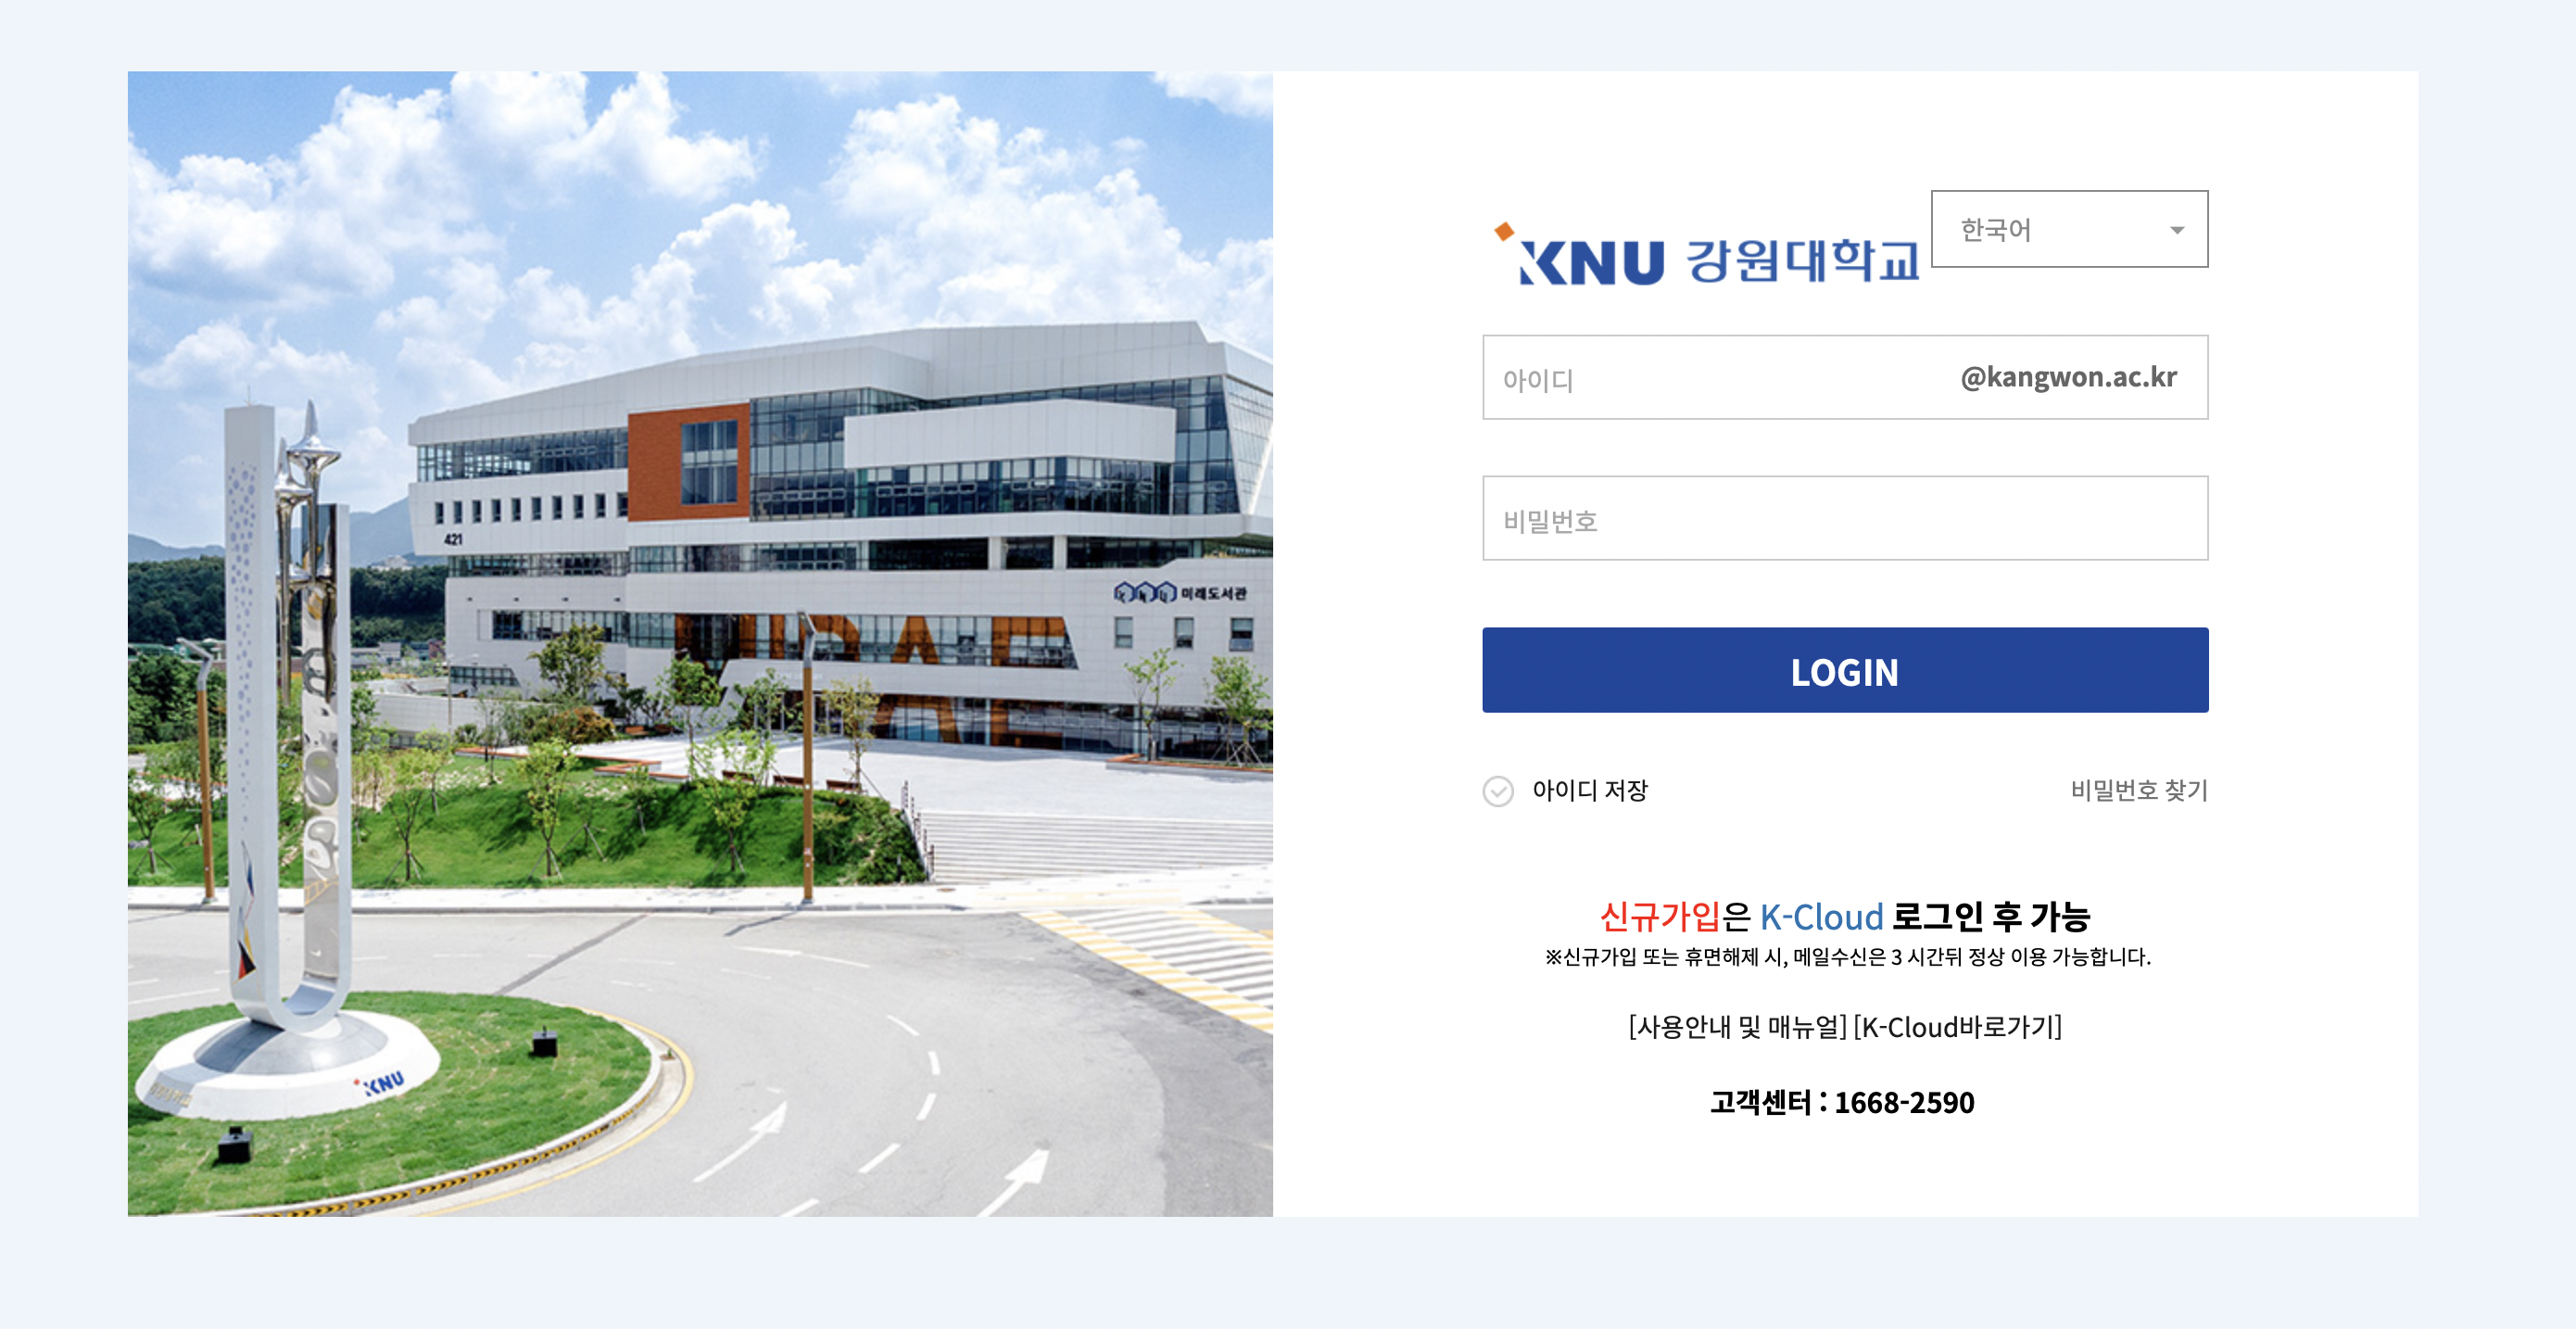 강원대 웹메일 (mail.kangwon.ac.kr)